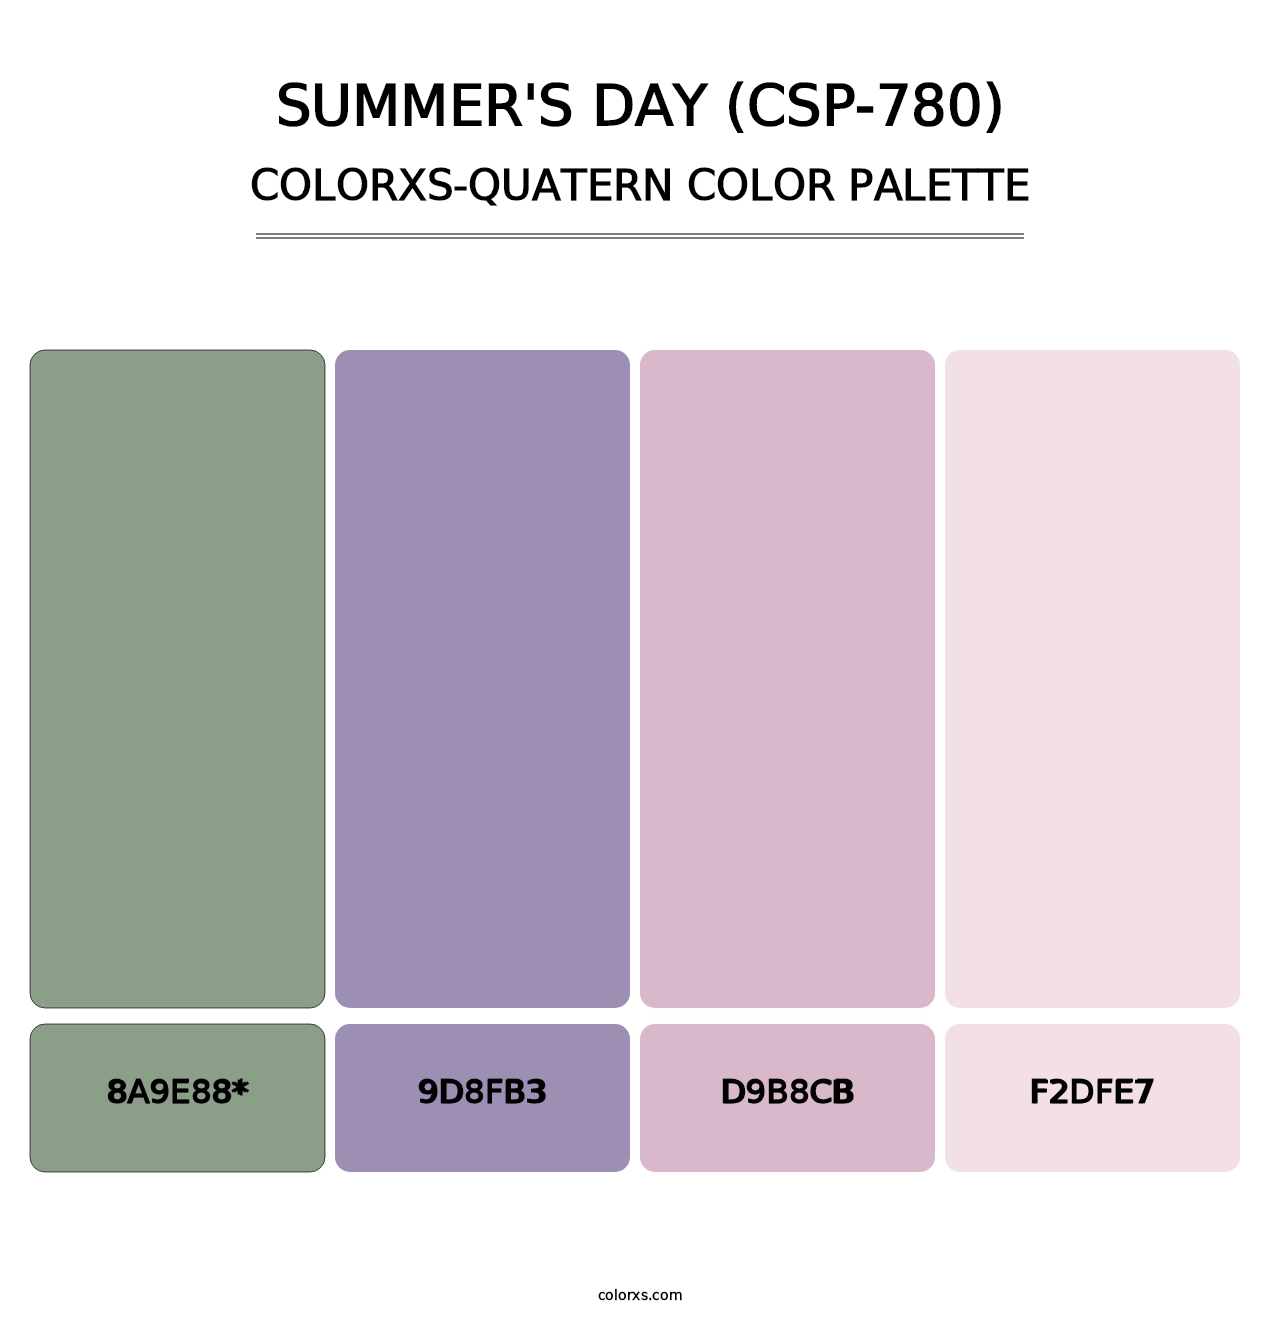 Summer's Day (CSP-780) - Colorxs Quad Palette